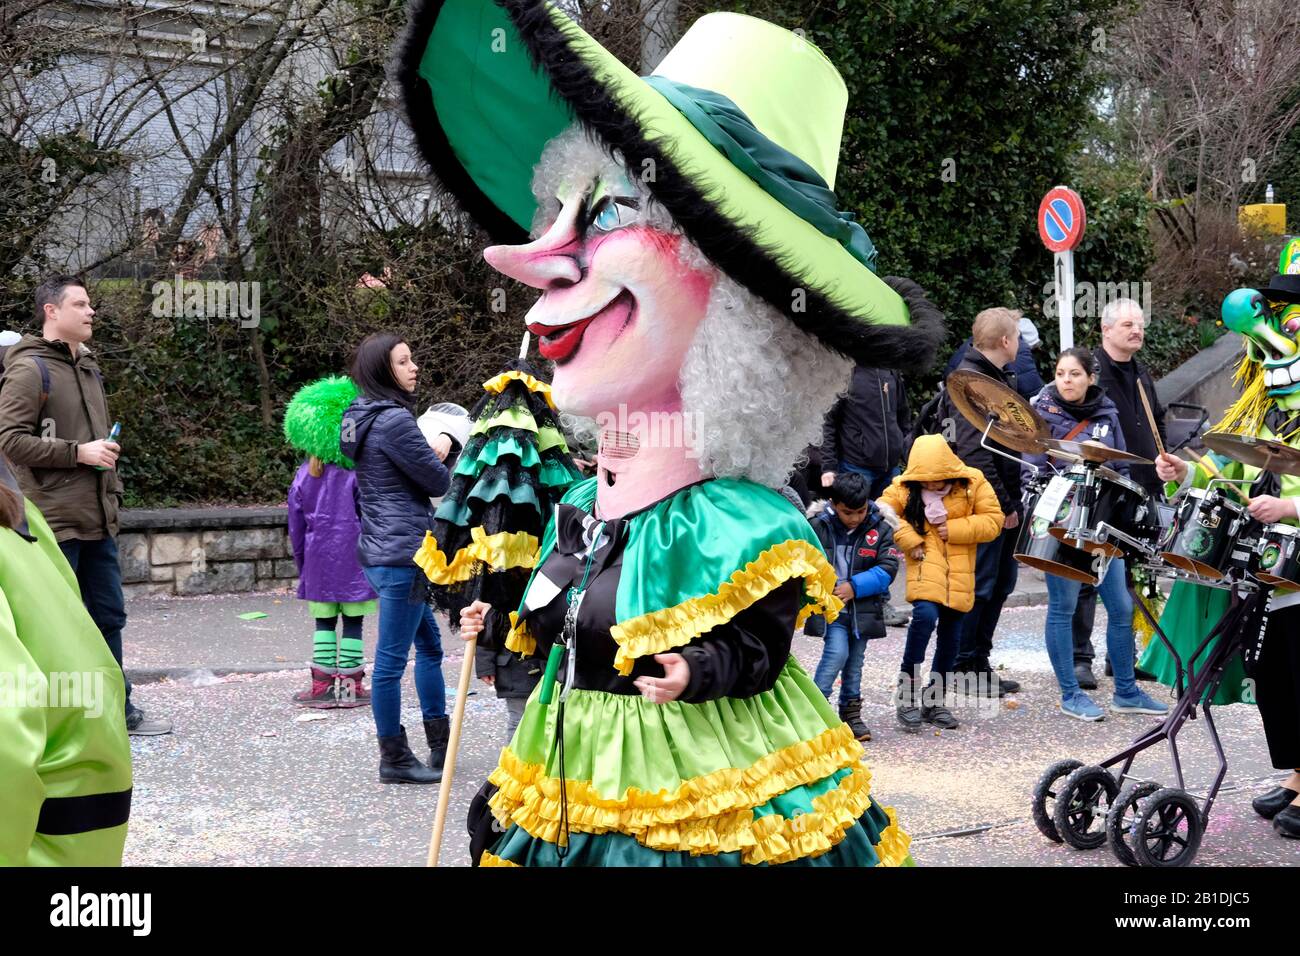 Un participant portant un costume et un masque au carnaval d'Allschwil, Bâle landschaft, Suisse Banque D'Images